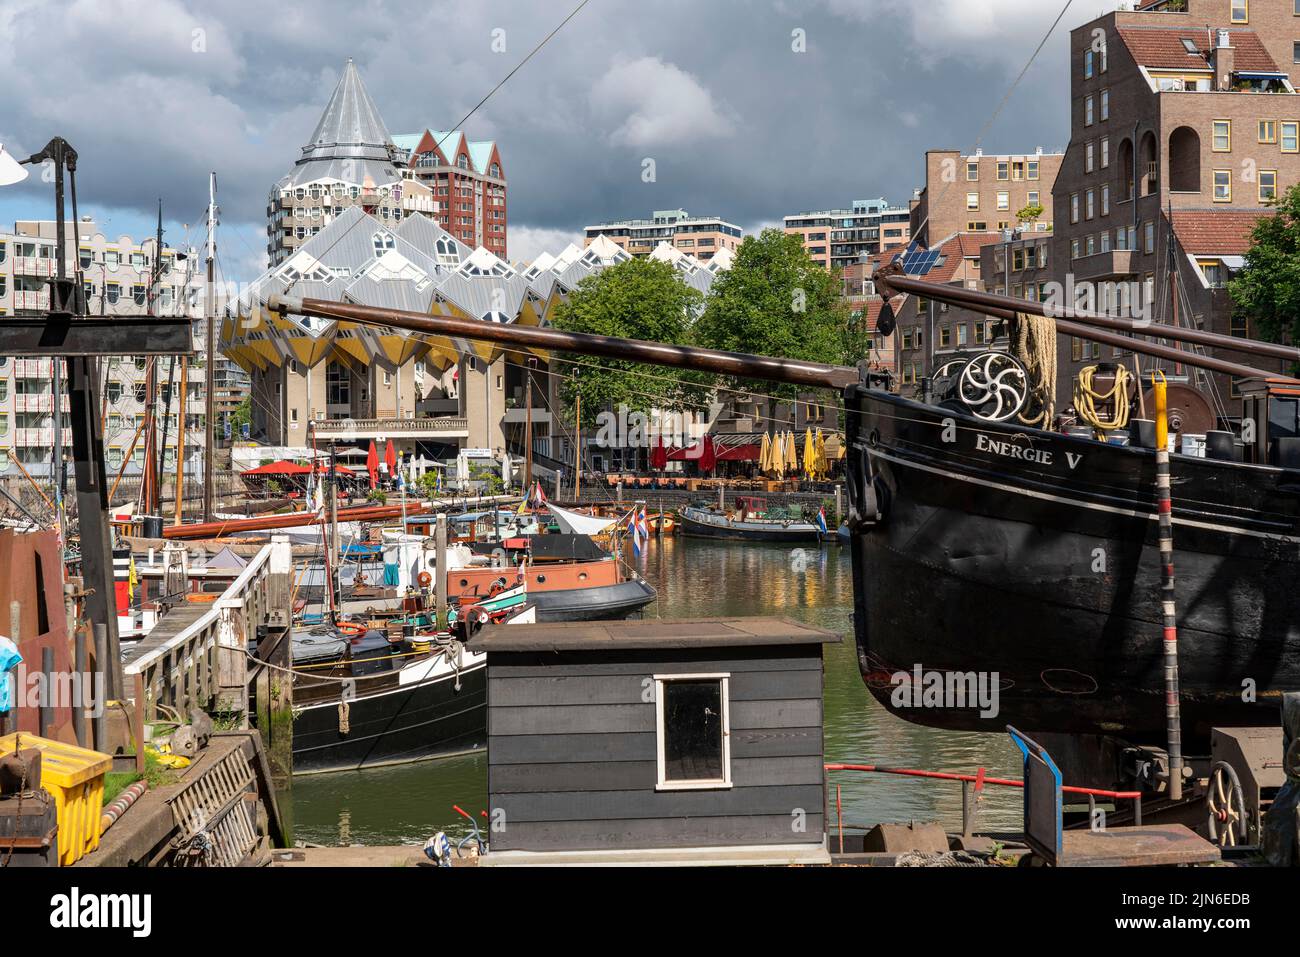 Centro de Rotterdam, Oudehaven, puerto histórico, barcos históricos, casas de cubos, Flat, cubo de Kijk por el arquitecto holandés Piet Blom, Países Bajos, Foto de stock